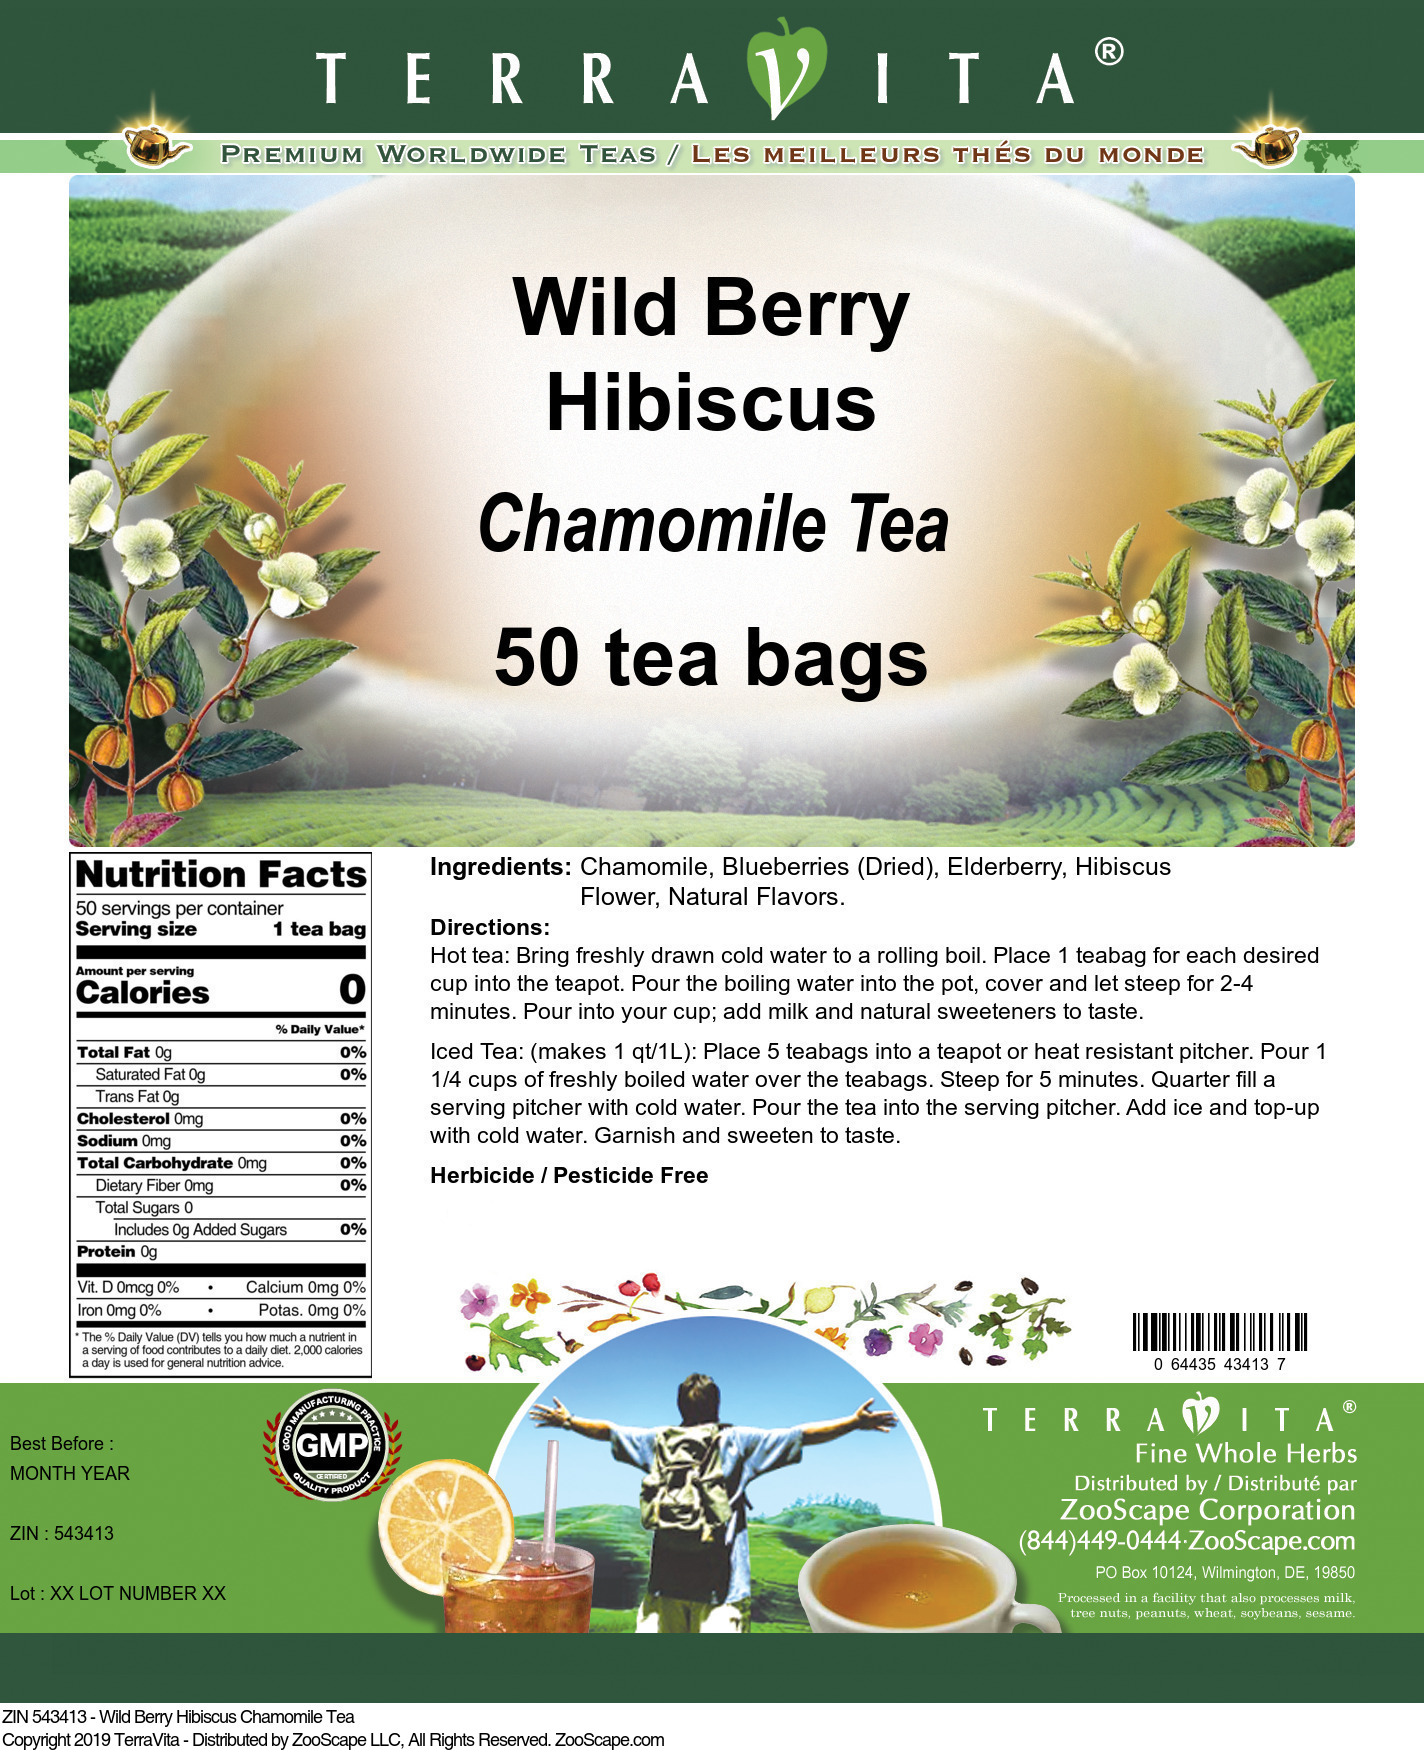 Wild Berry Hibiscus Chamomile Tea - Label